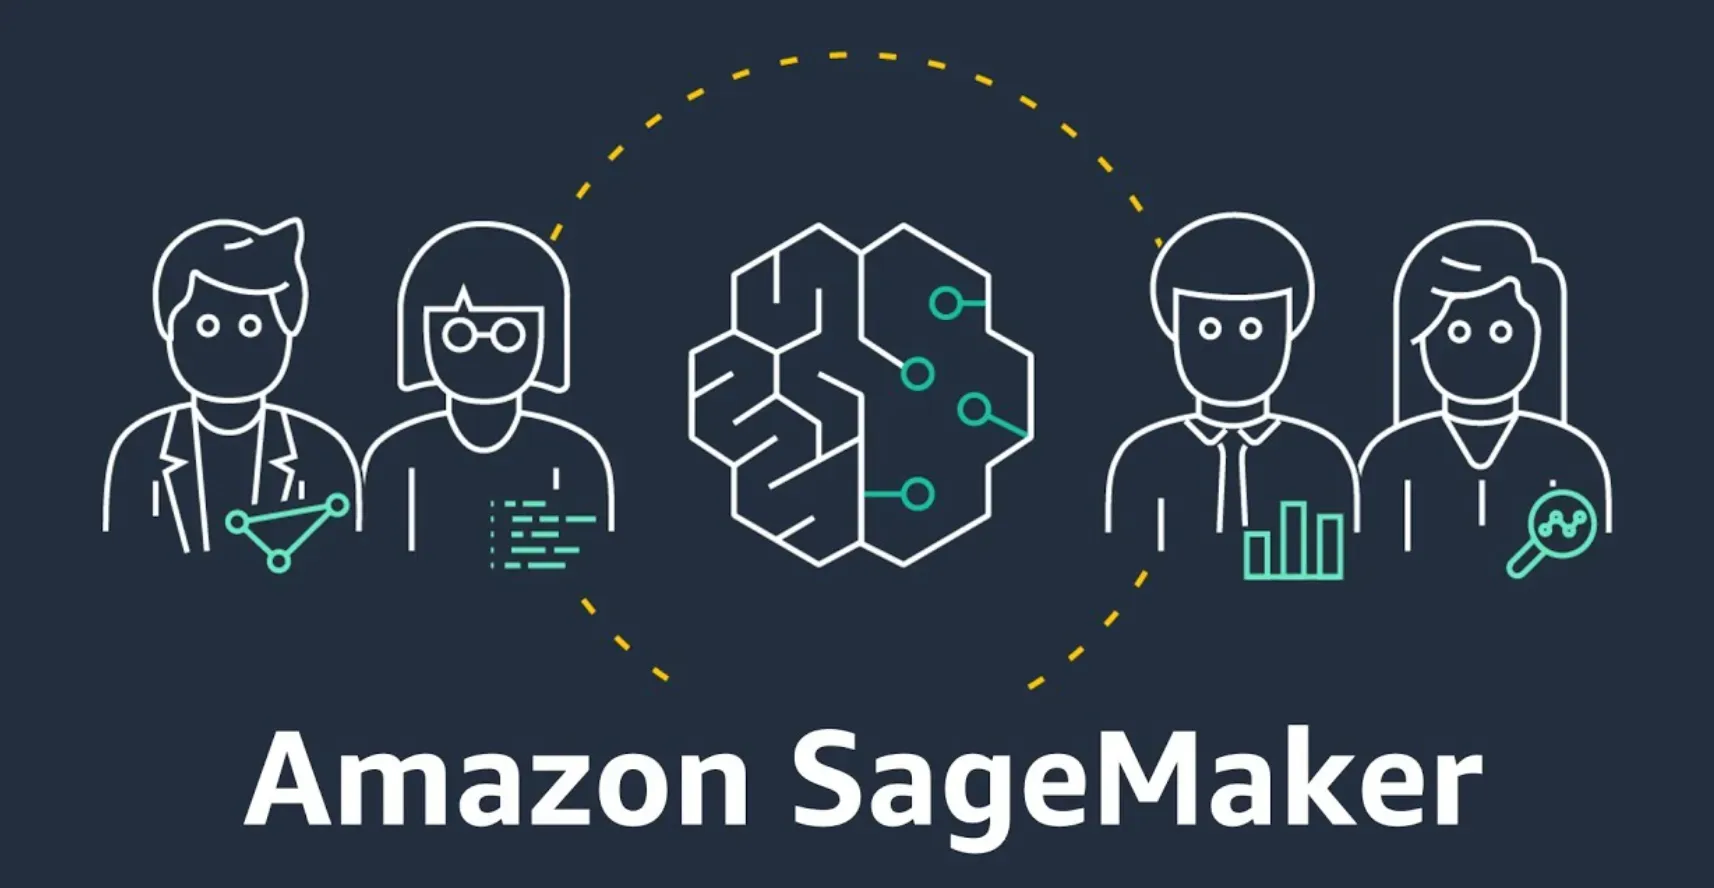 Trends in Amazon SageMaker